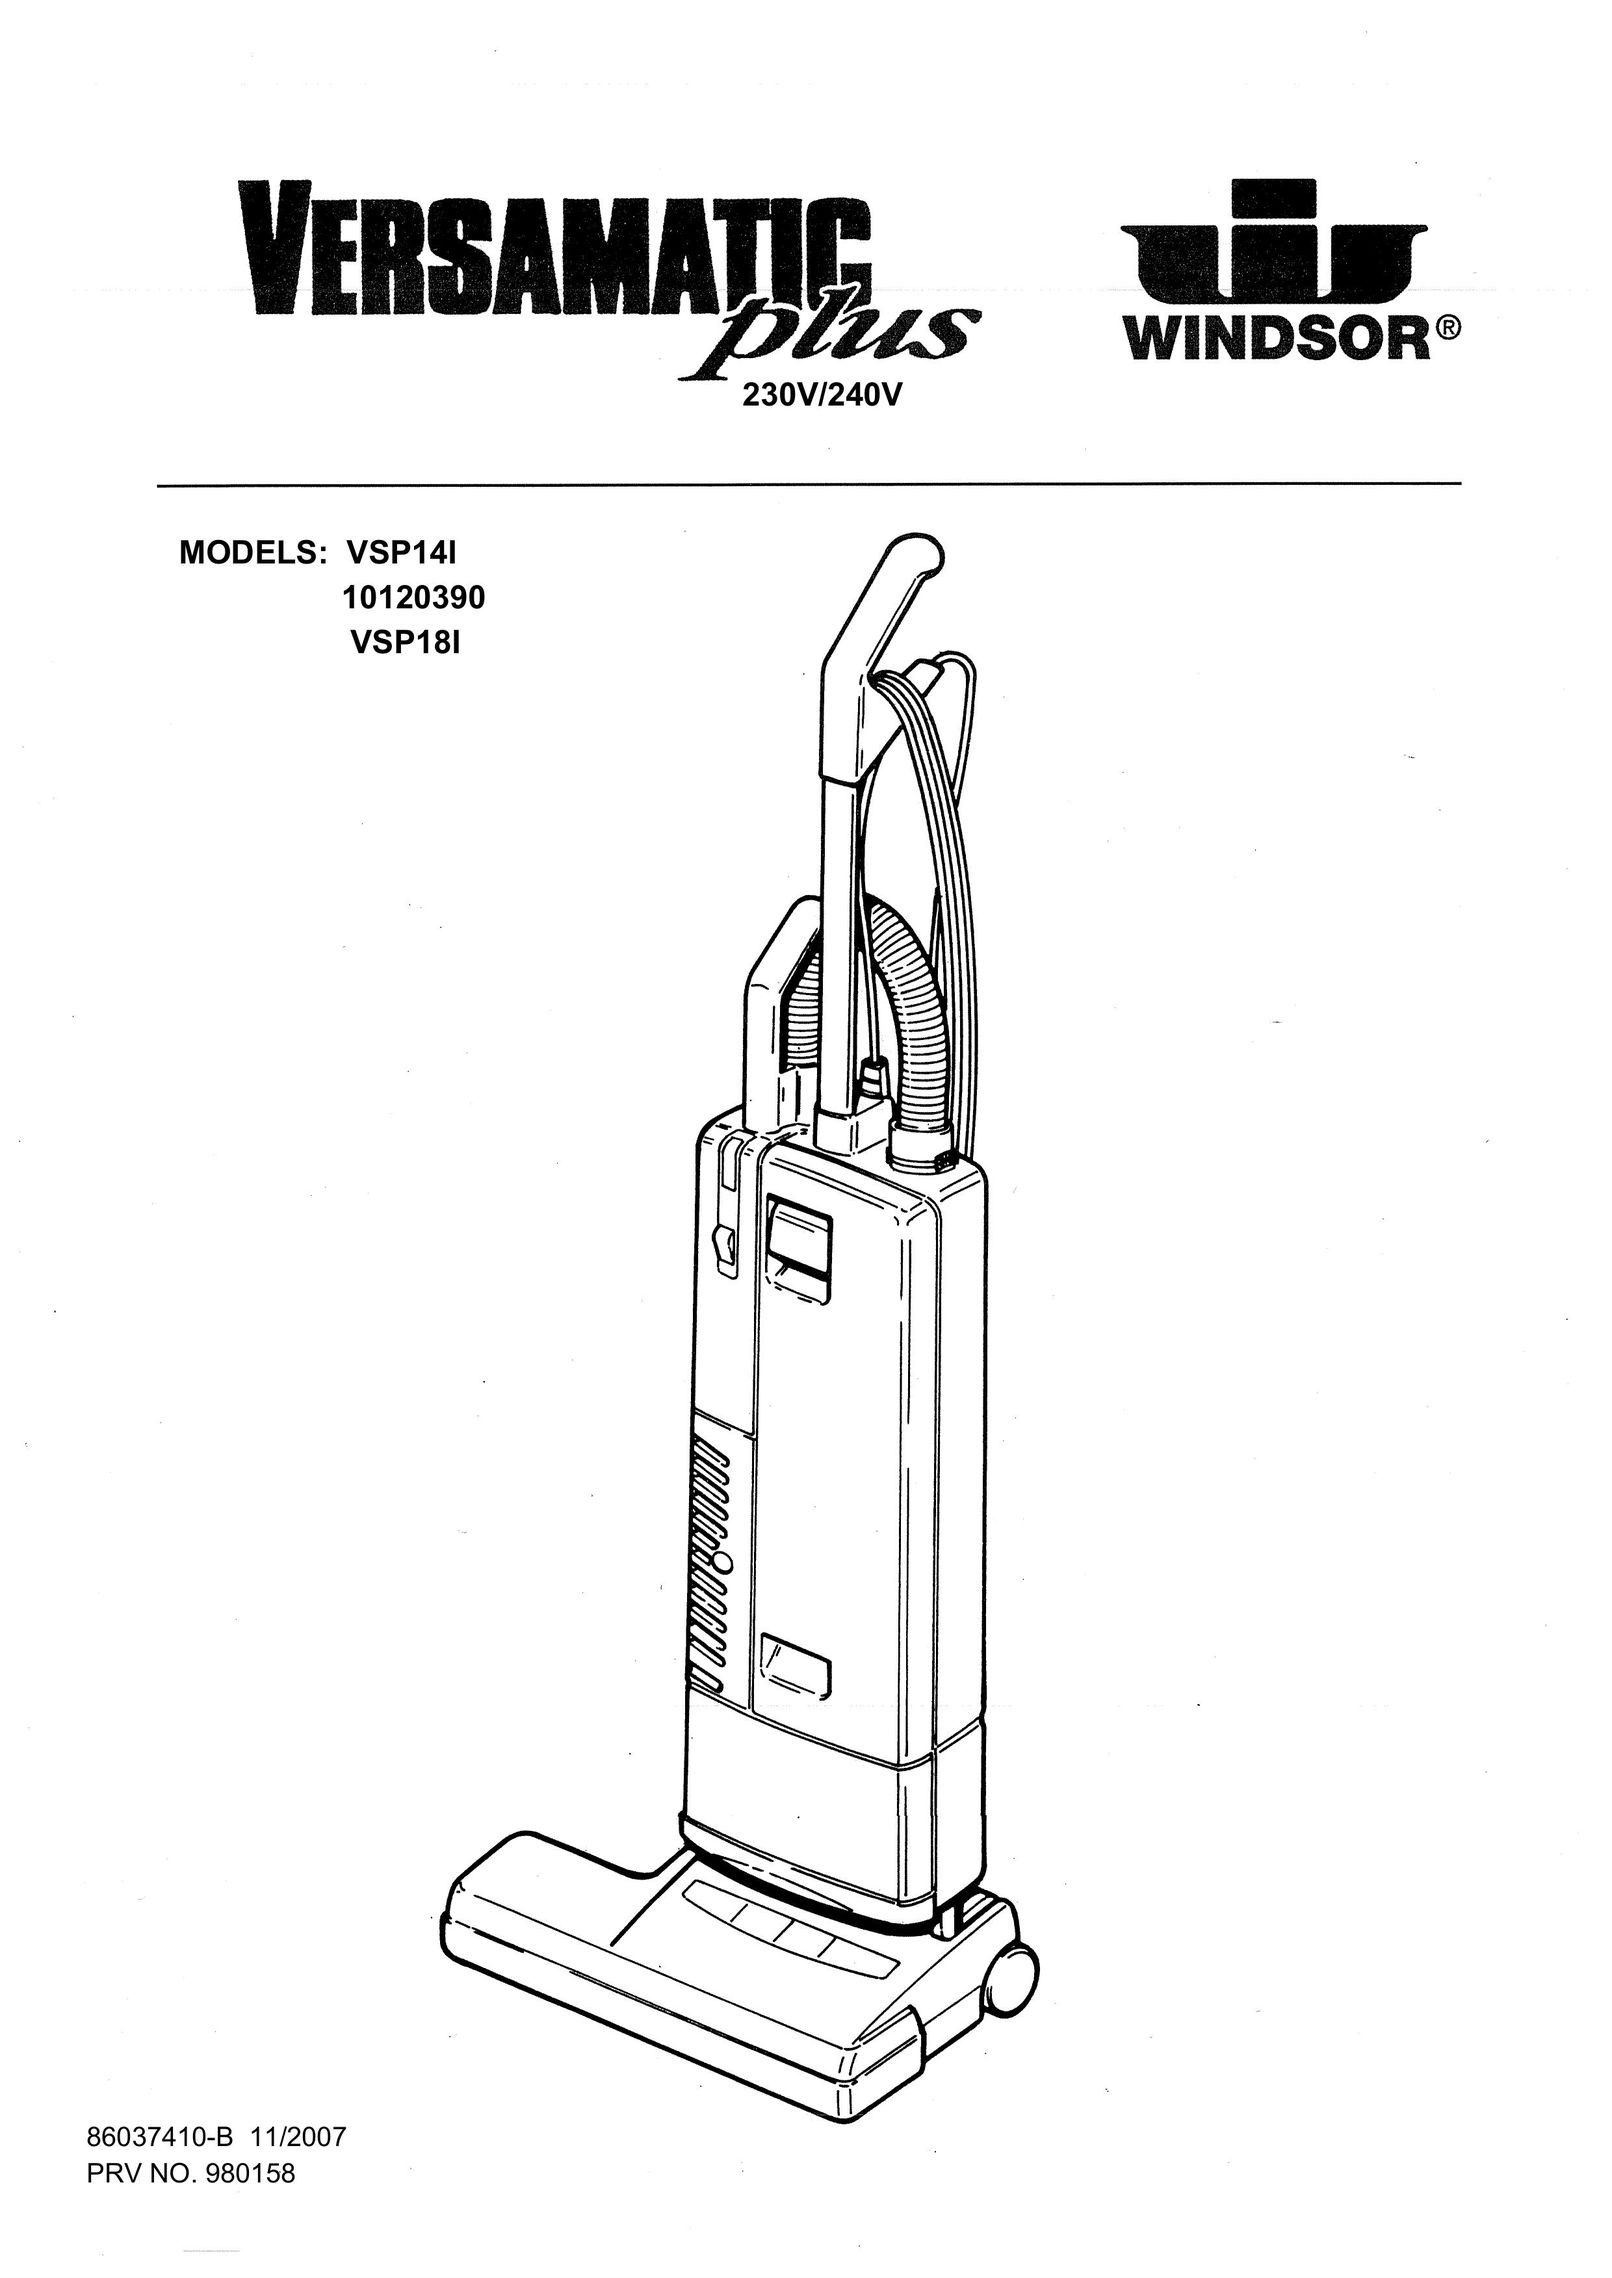 Windsor 10120390 Vacuum Cleaner User Manual